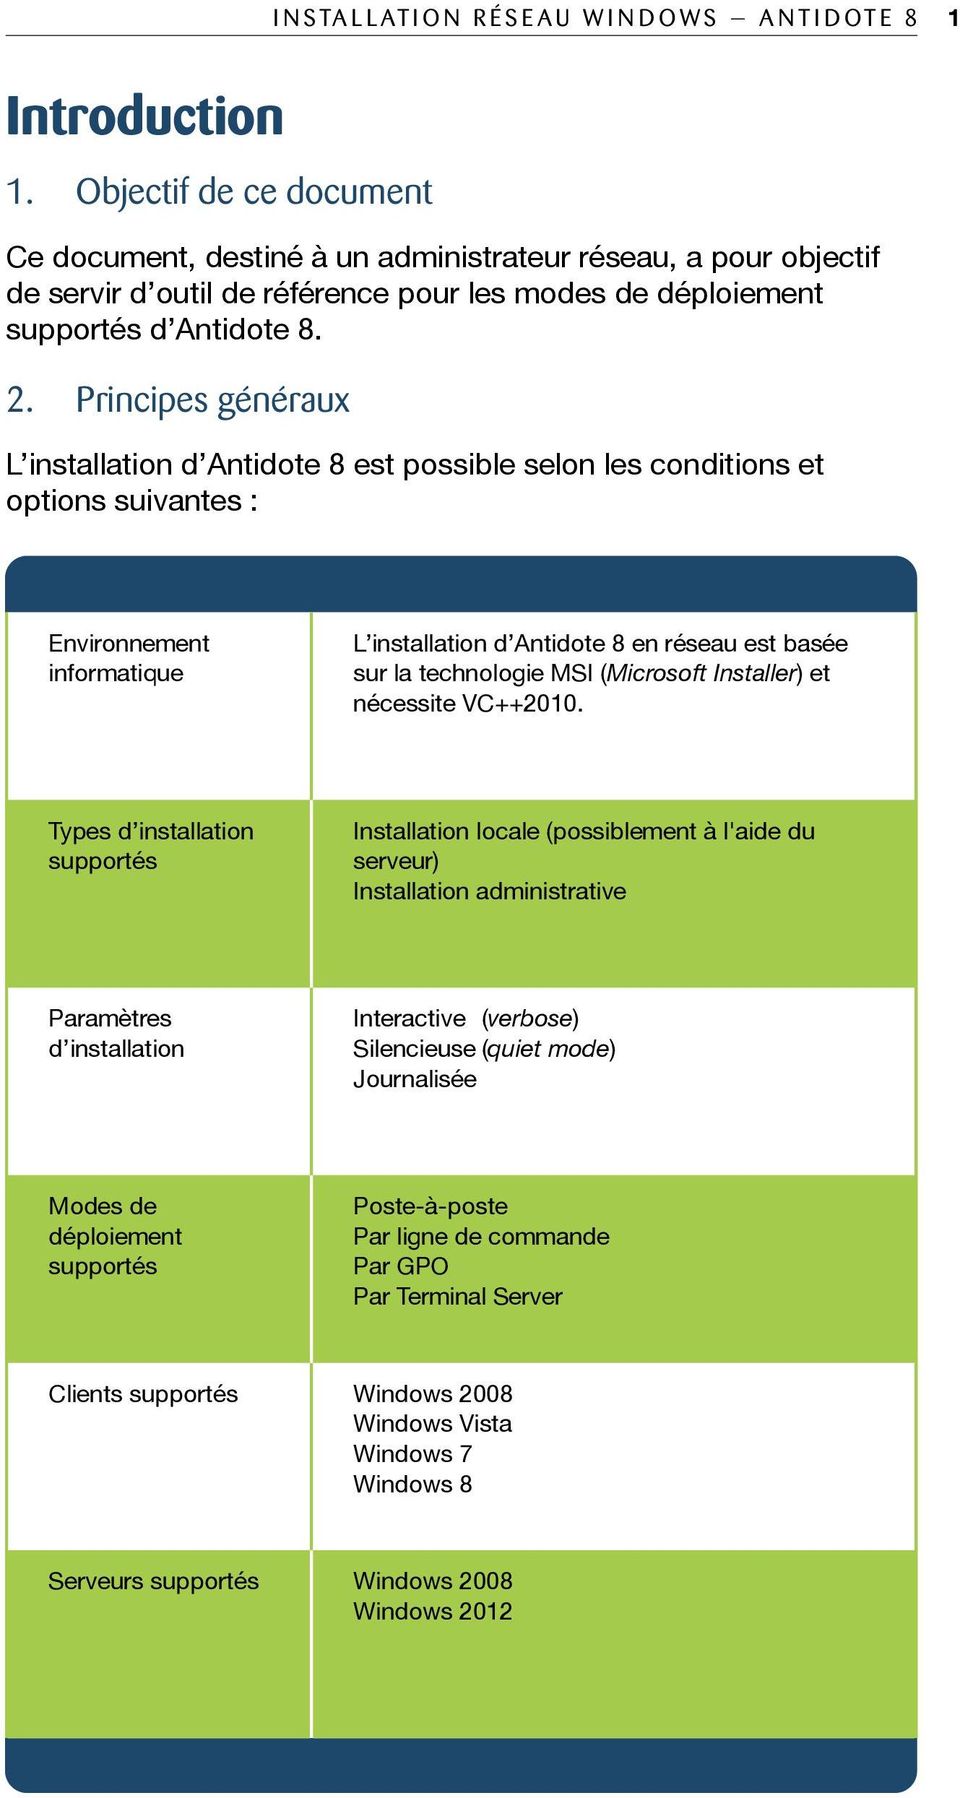 Principes généraux L installation d Antidote 8 est possible selon les conditions et options suivantes : Environnement informatique L installation d Antidote 8 en réseau est basée sur la technologie